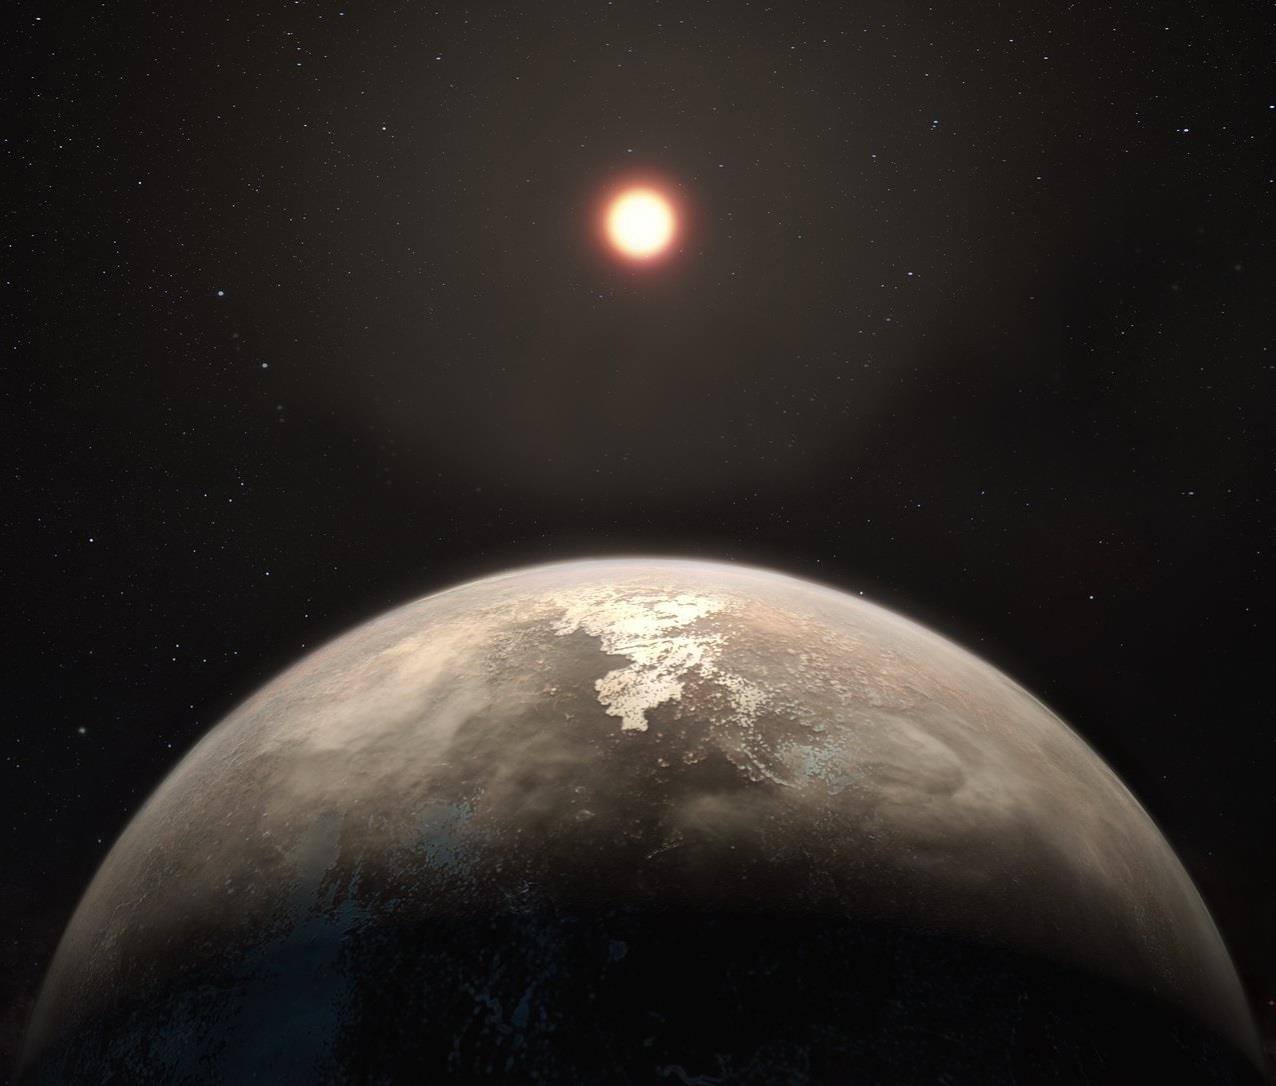 11 სინათლის წლის მანძილზე, აღმოჩენილია დედამიწის ზომის პლანეტა - სავარაუდოდ, სიცოცხლისთვის ვარგისი